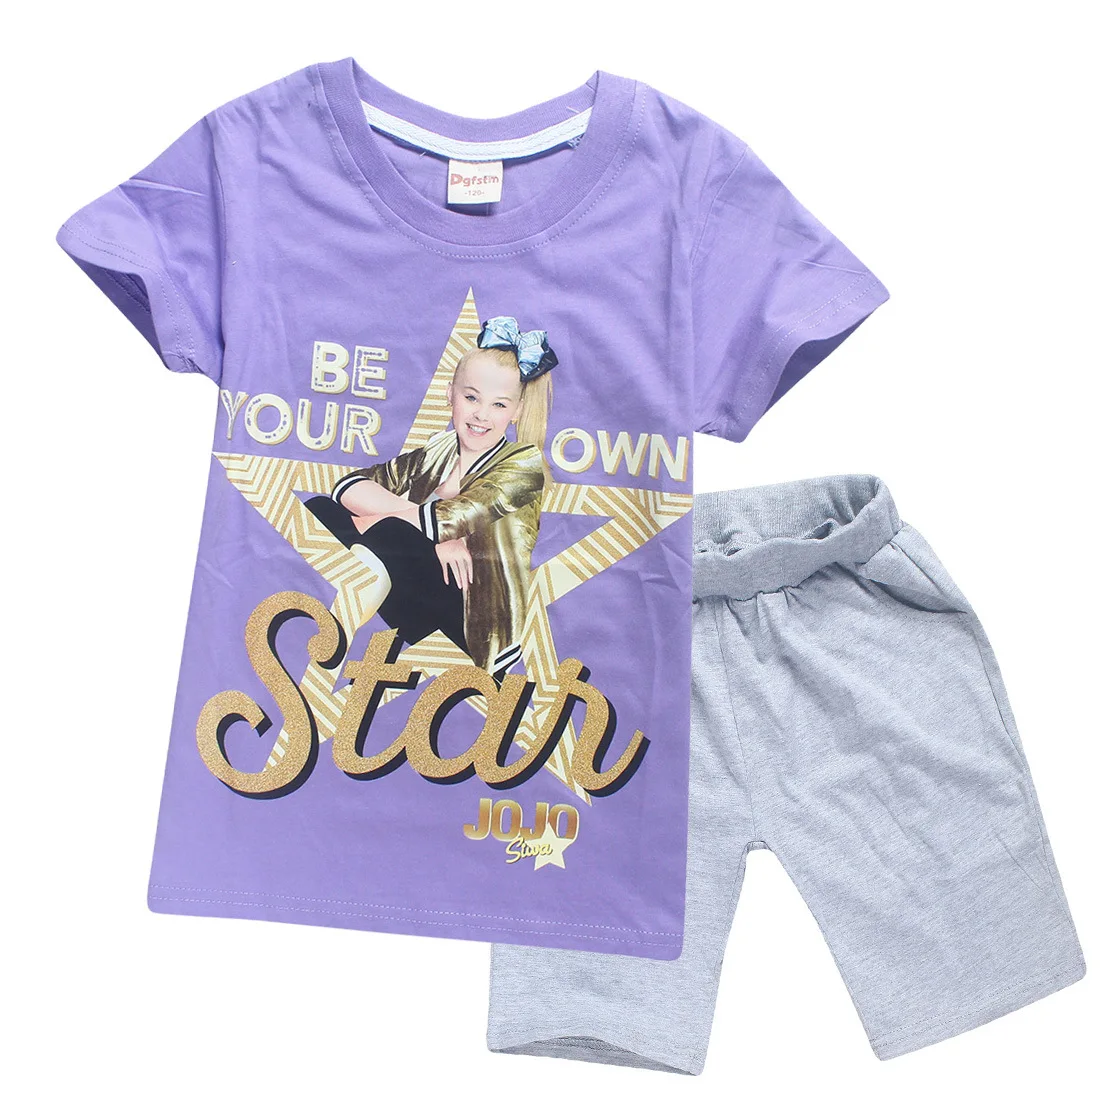 JOJO SIWA/Детские футболки хлопковые футболки для маленьких девочек комплекты с короткими рукавами для мальчиков и девочек футболки Одежда для девочек 10-12 лет - Цвет: S8361-purple